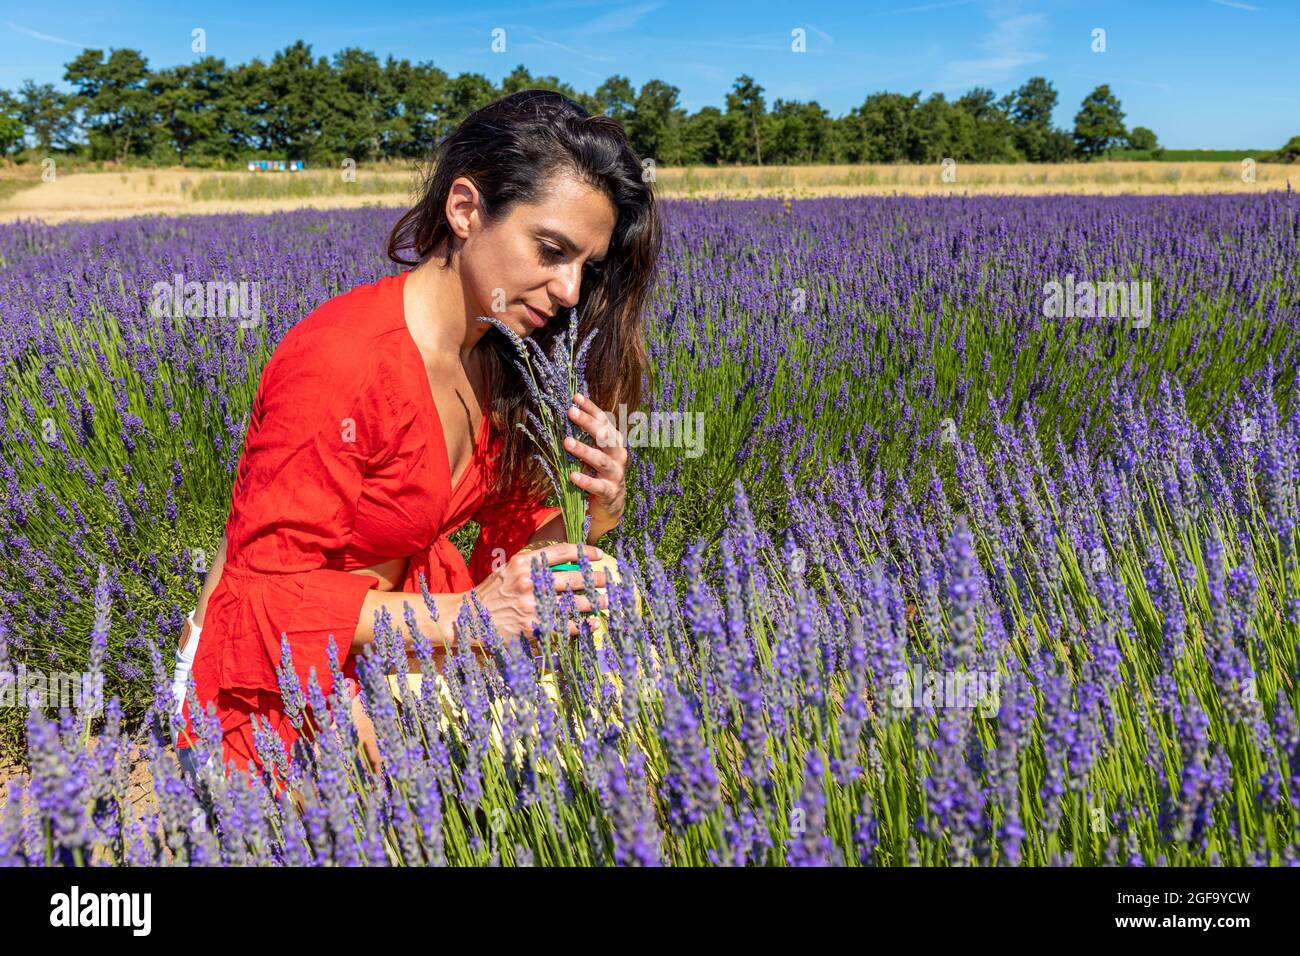 Junge Frau sammelt Lavendelblüten auf einem blühenden Feld und riecht ihr köstliches Parfüm. Konzept der Entspannung und des Wohlbefindens in der Natur. Stockfoto